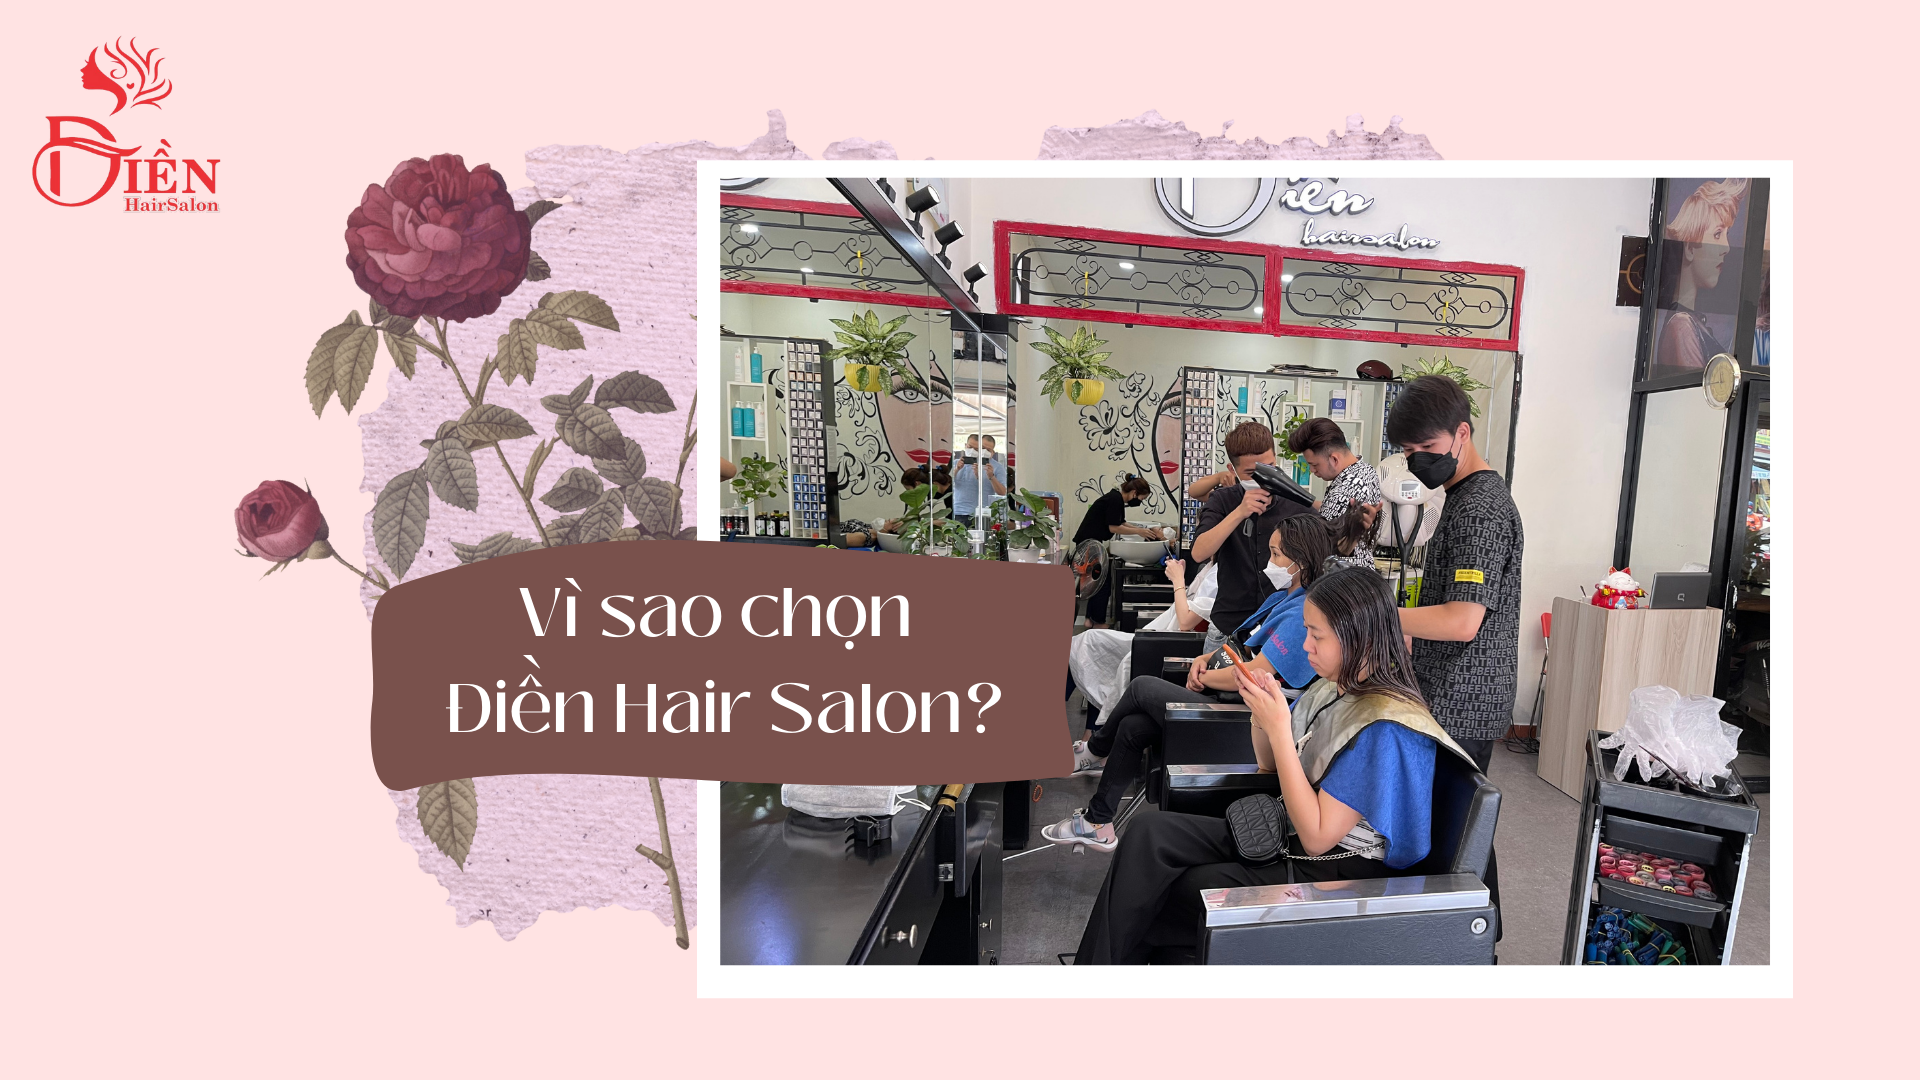 Vì sao chọn Điền Hair Salon